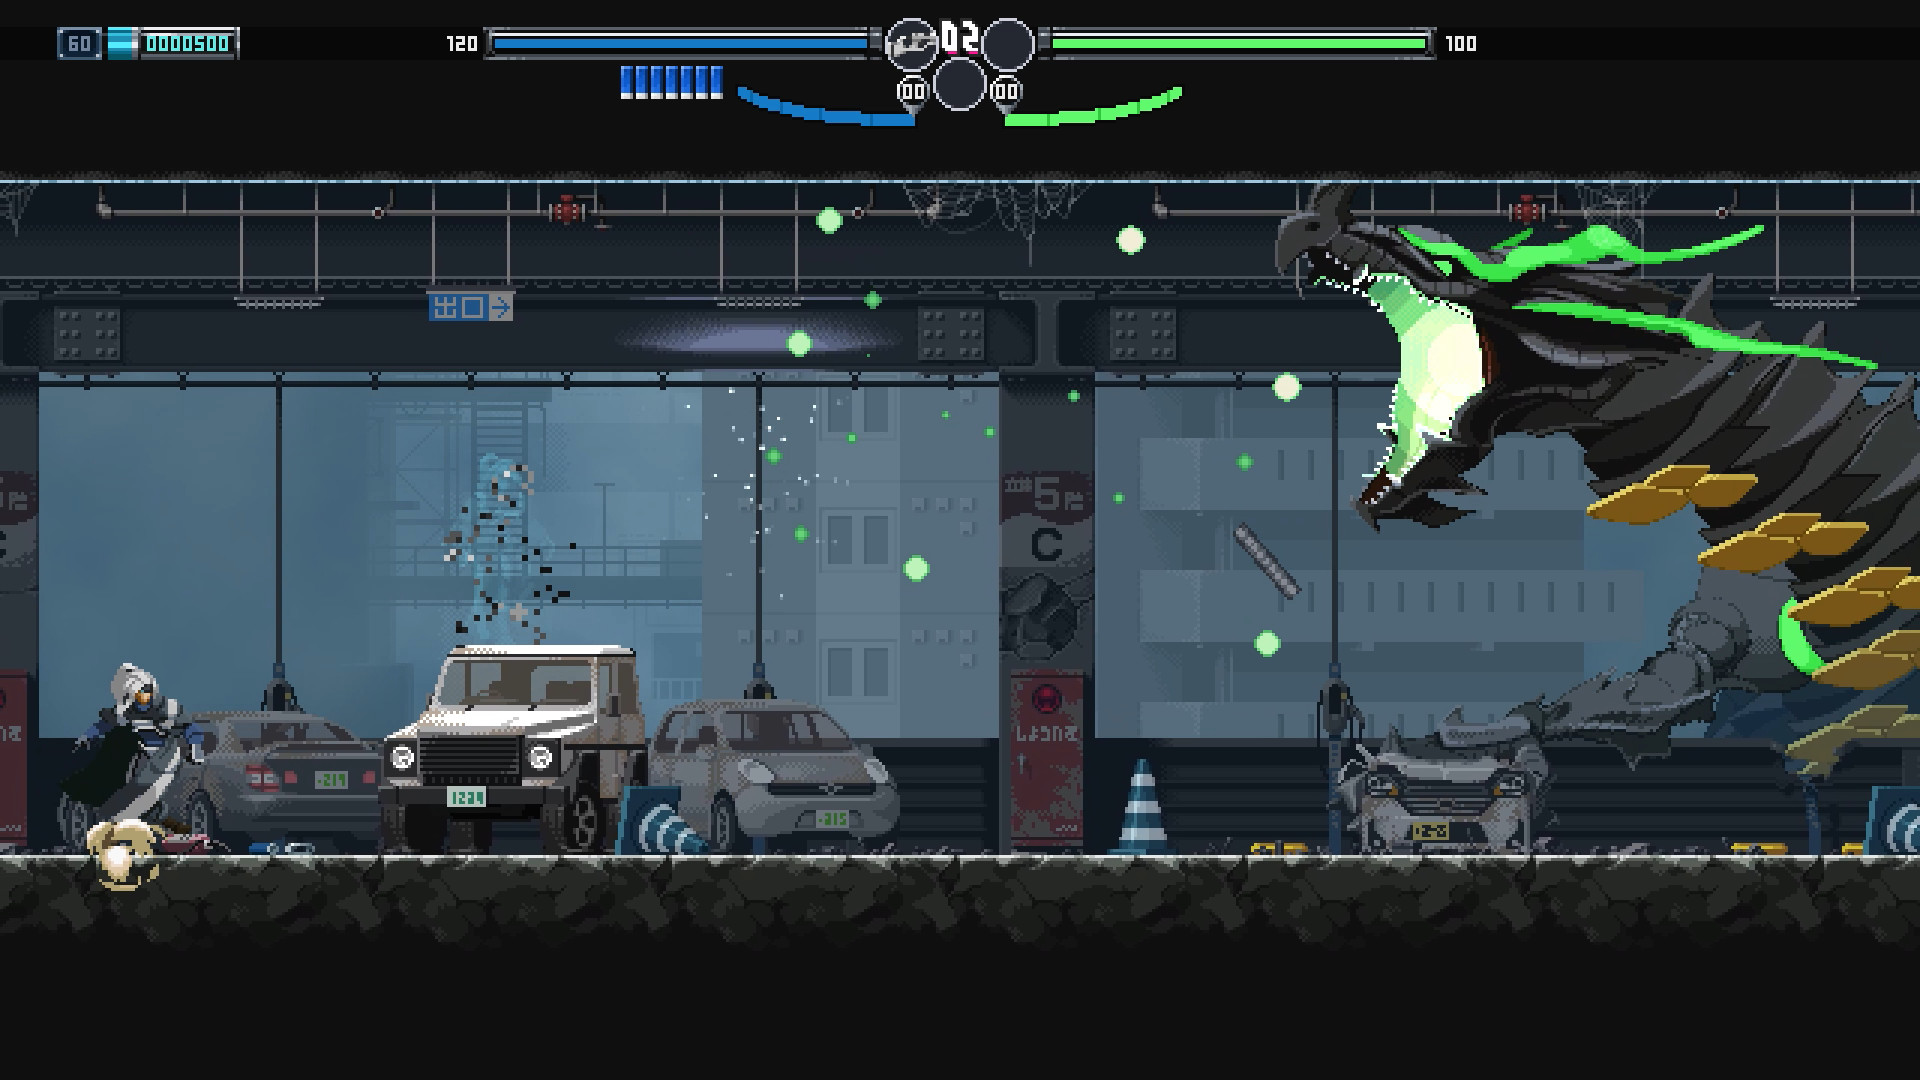 Изображение из 2D экшн-игры Blade Chimera, на котором главный герой с белыми волосами сражается с гигантским драконом на парковке